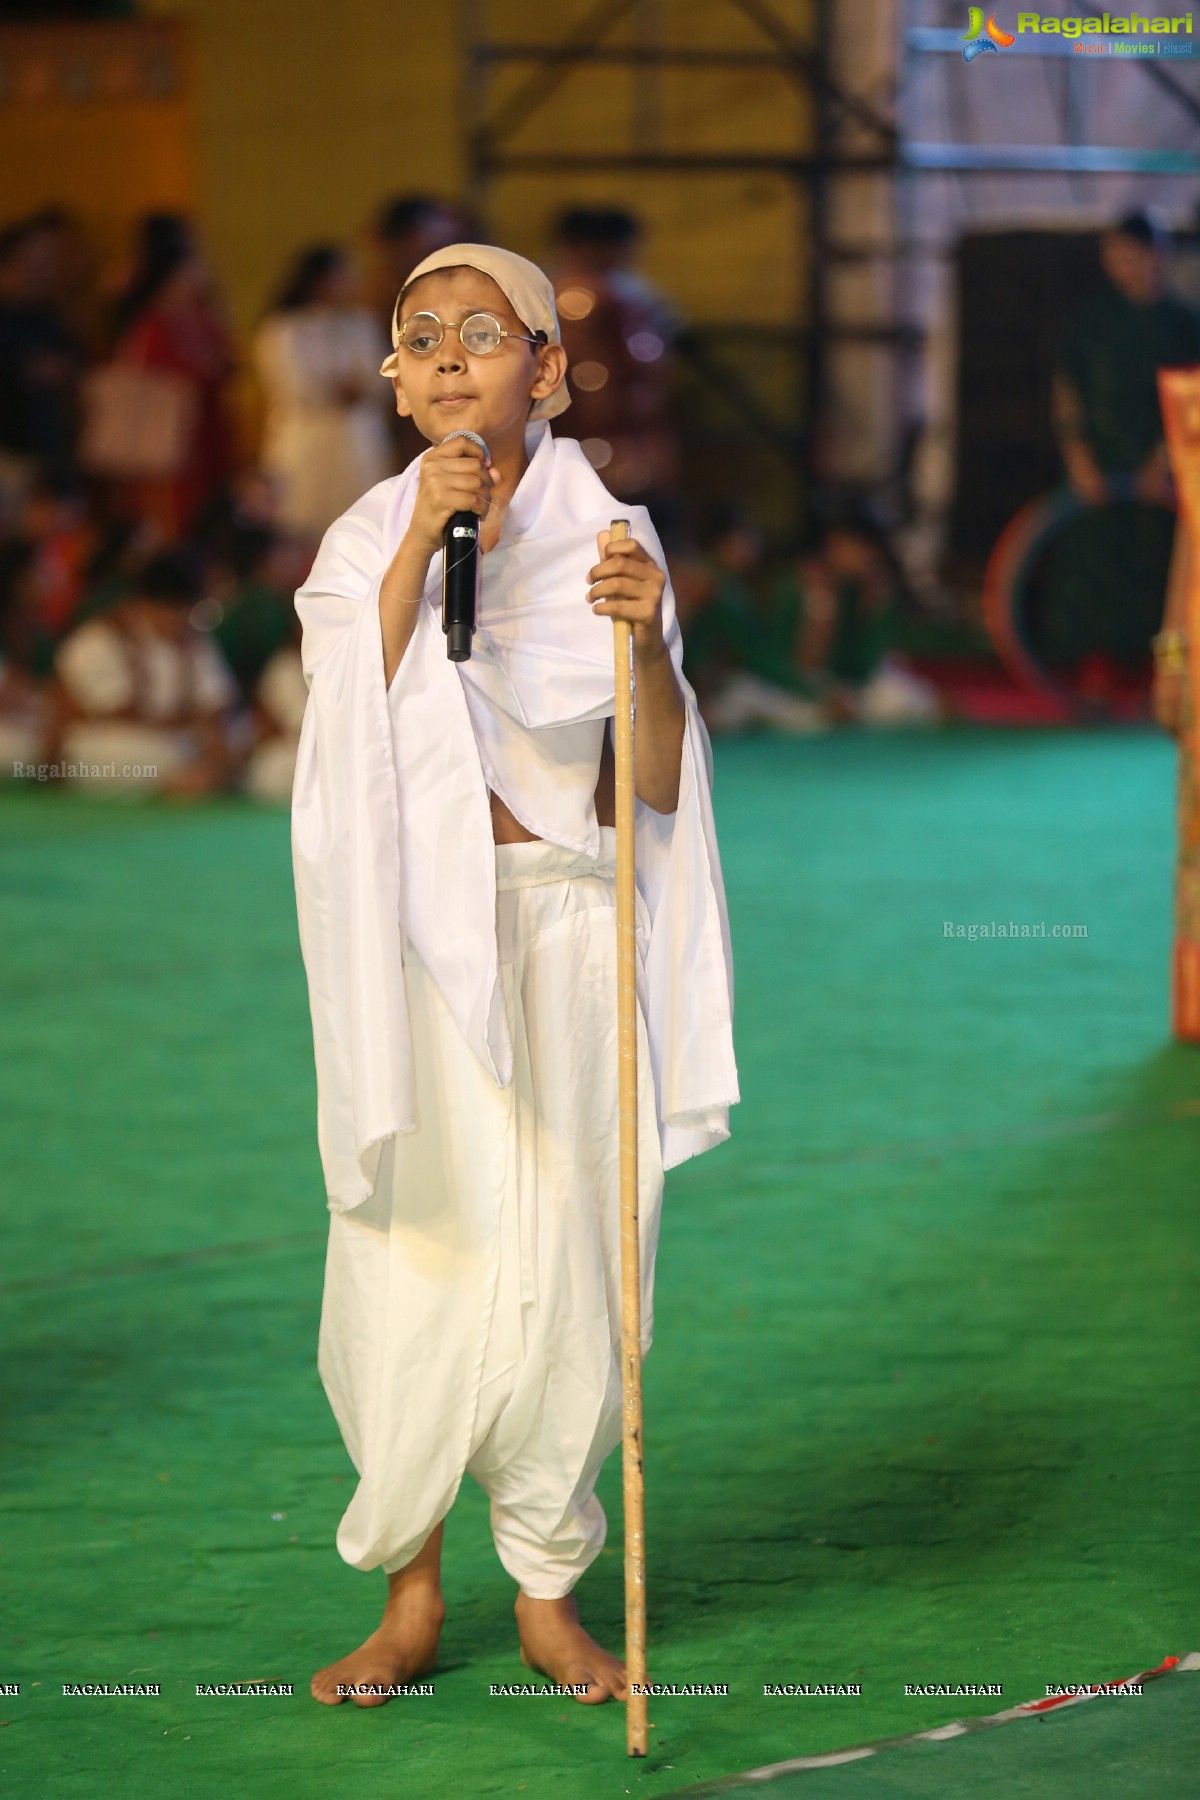 Namdhari Gaurav Utsav Patriotic Garba Dandiya Event